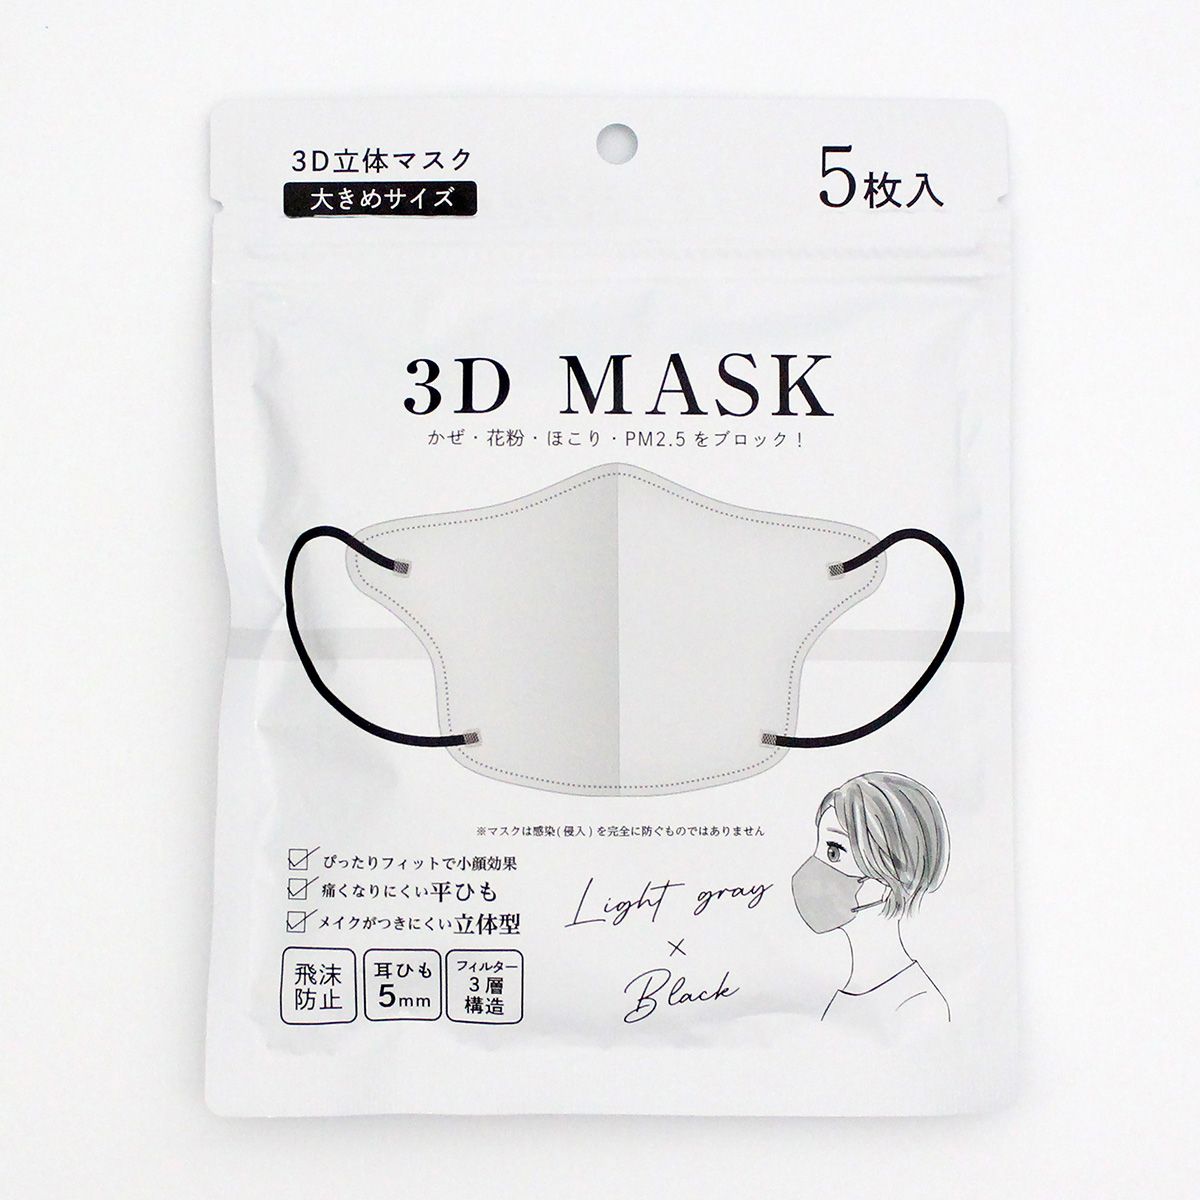 3D立体マスク 不織布マスク ライトグレーxブラック 大きめ 5枚入り 347005